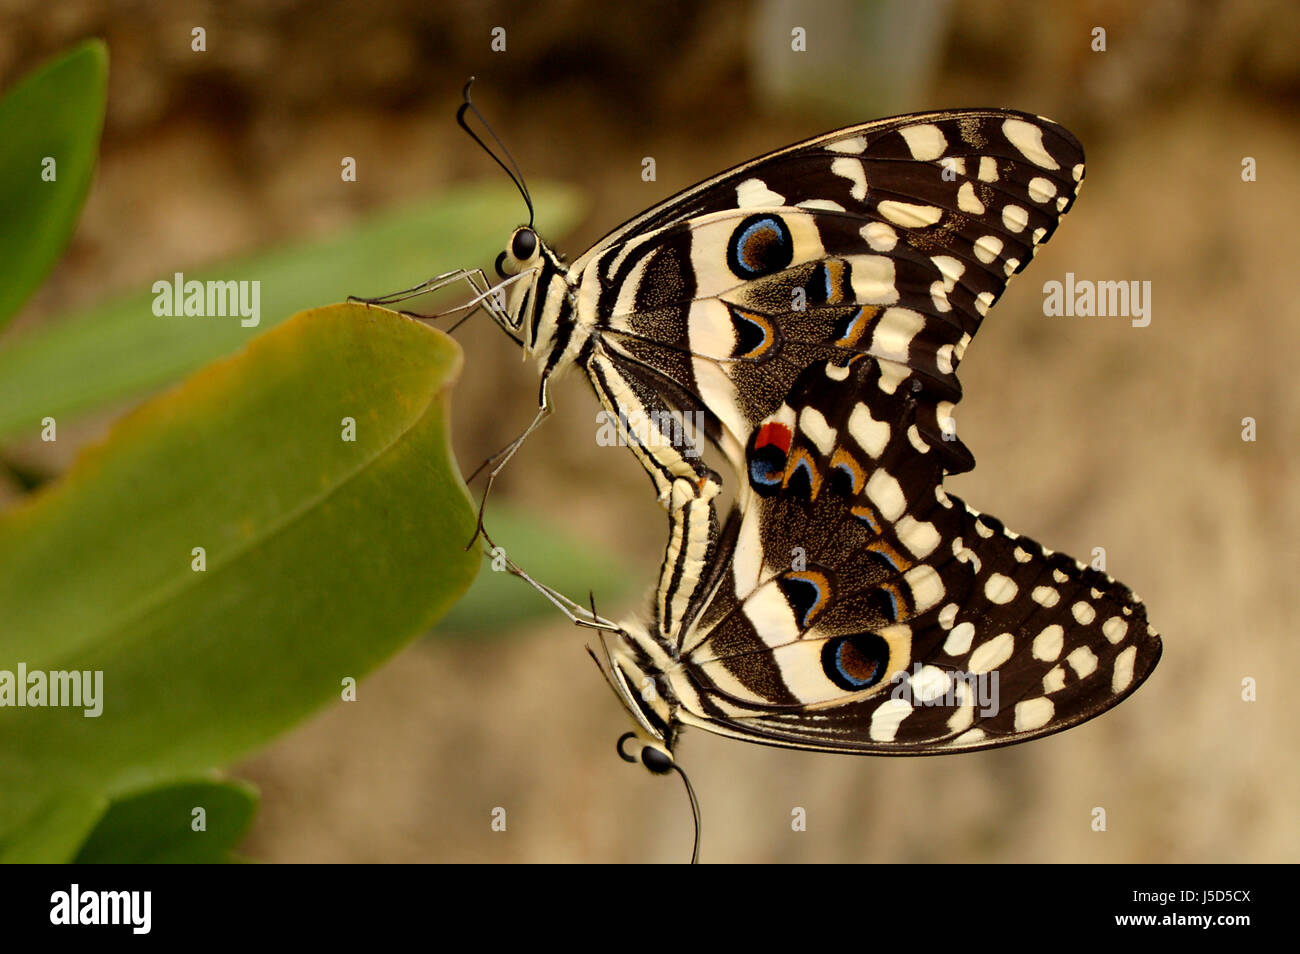 Asien Tiere exotische Schmetterling Schmetterlinge Farbe Paarung Mate Farben Farben Stockfoto